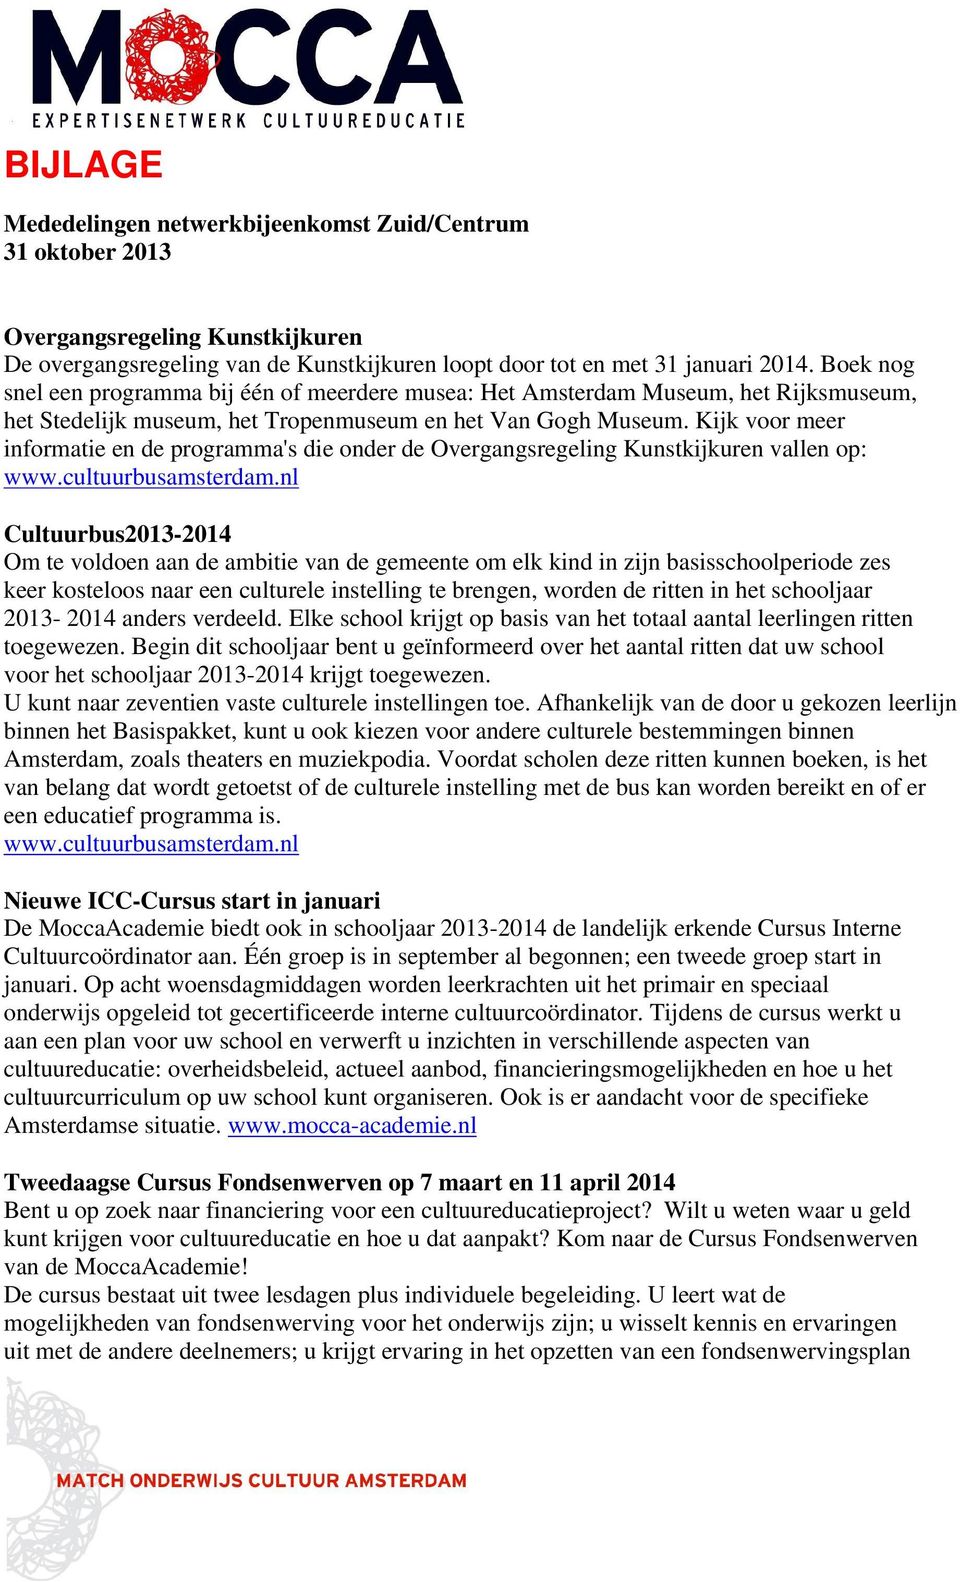 Kijk voor meer informatie en de programma's die onder de Overgangsregeling Kunstkijkuren vallen op: www.cultuurbusamsterdam.